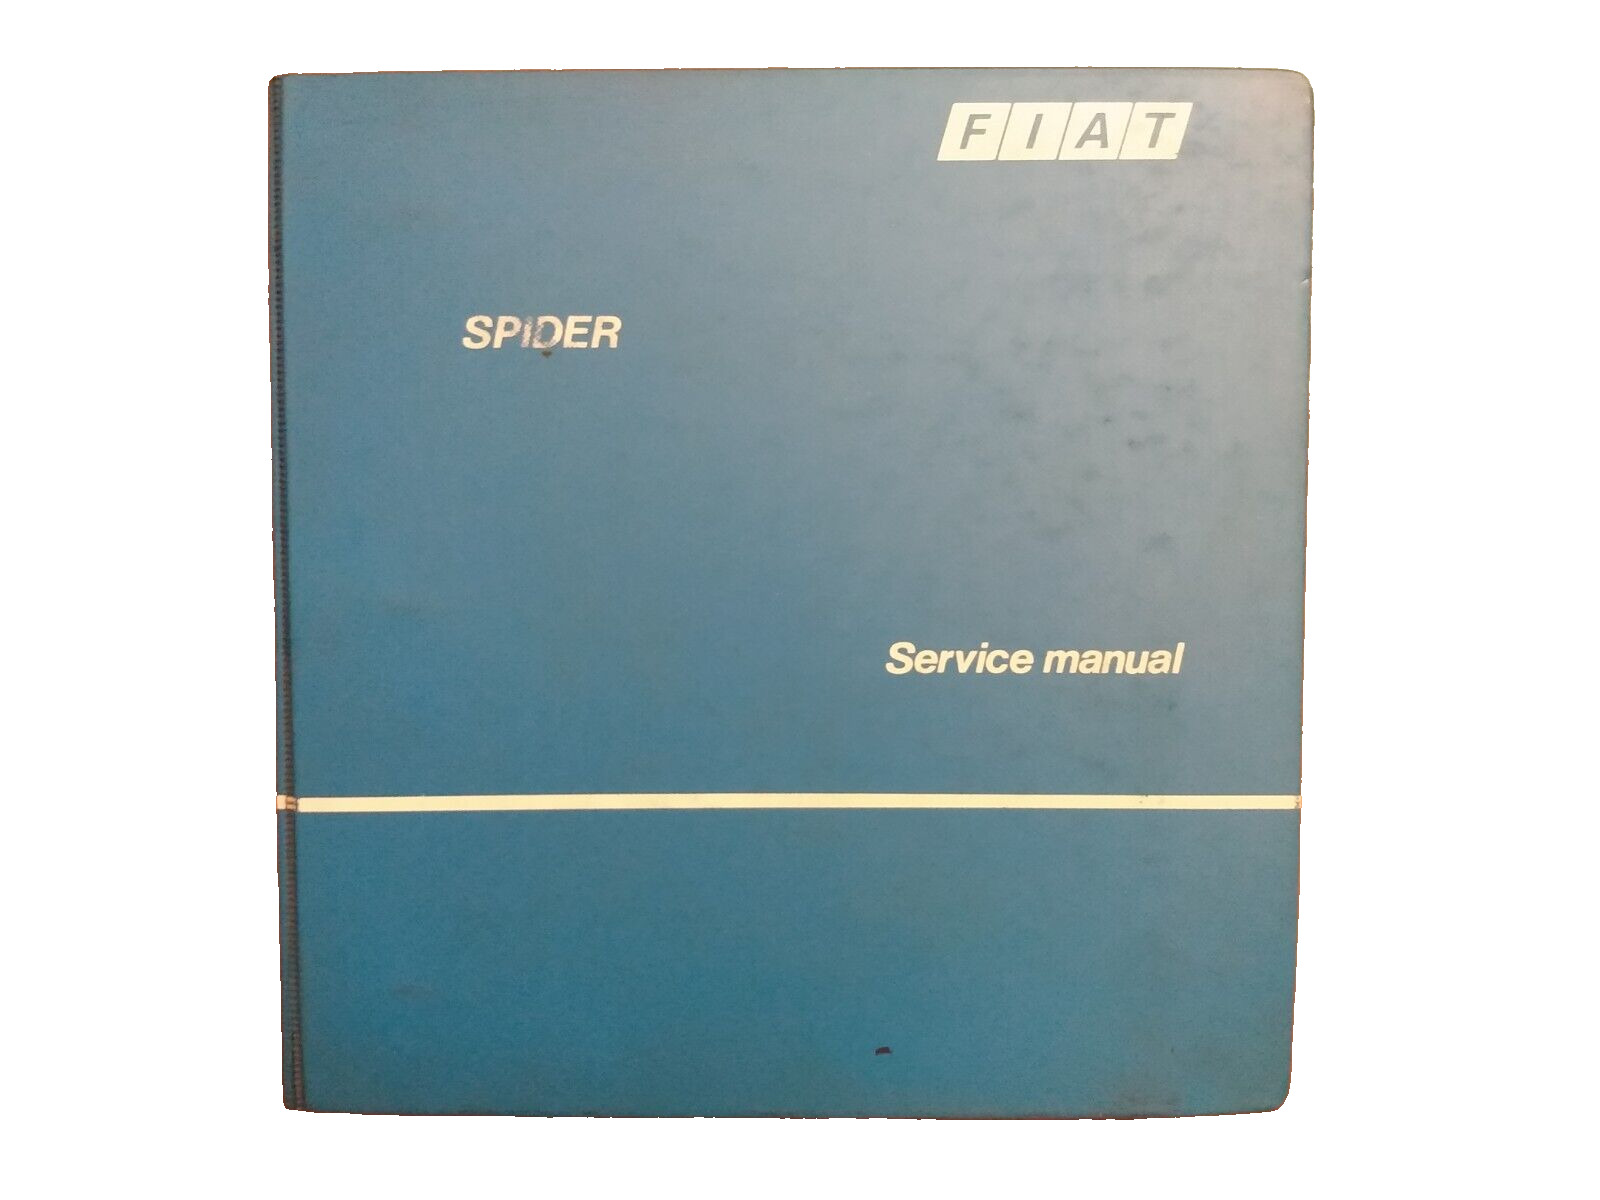 FIAT 124 SPIDER DEALER DIAGNOSES MAINTENANCE REPAIR MANUAL OEM FOR 1979 ~~1985